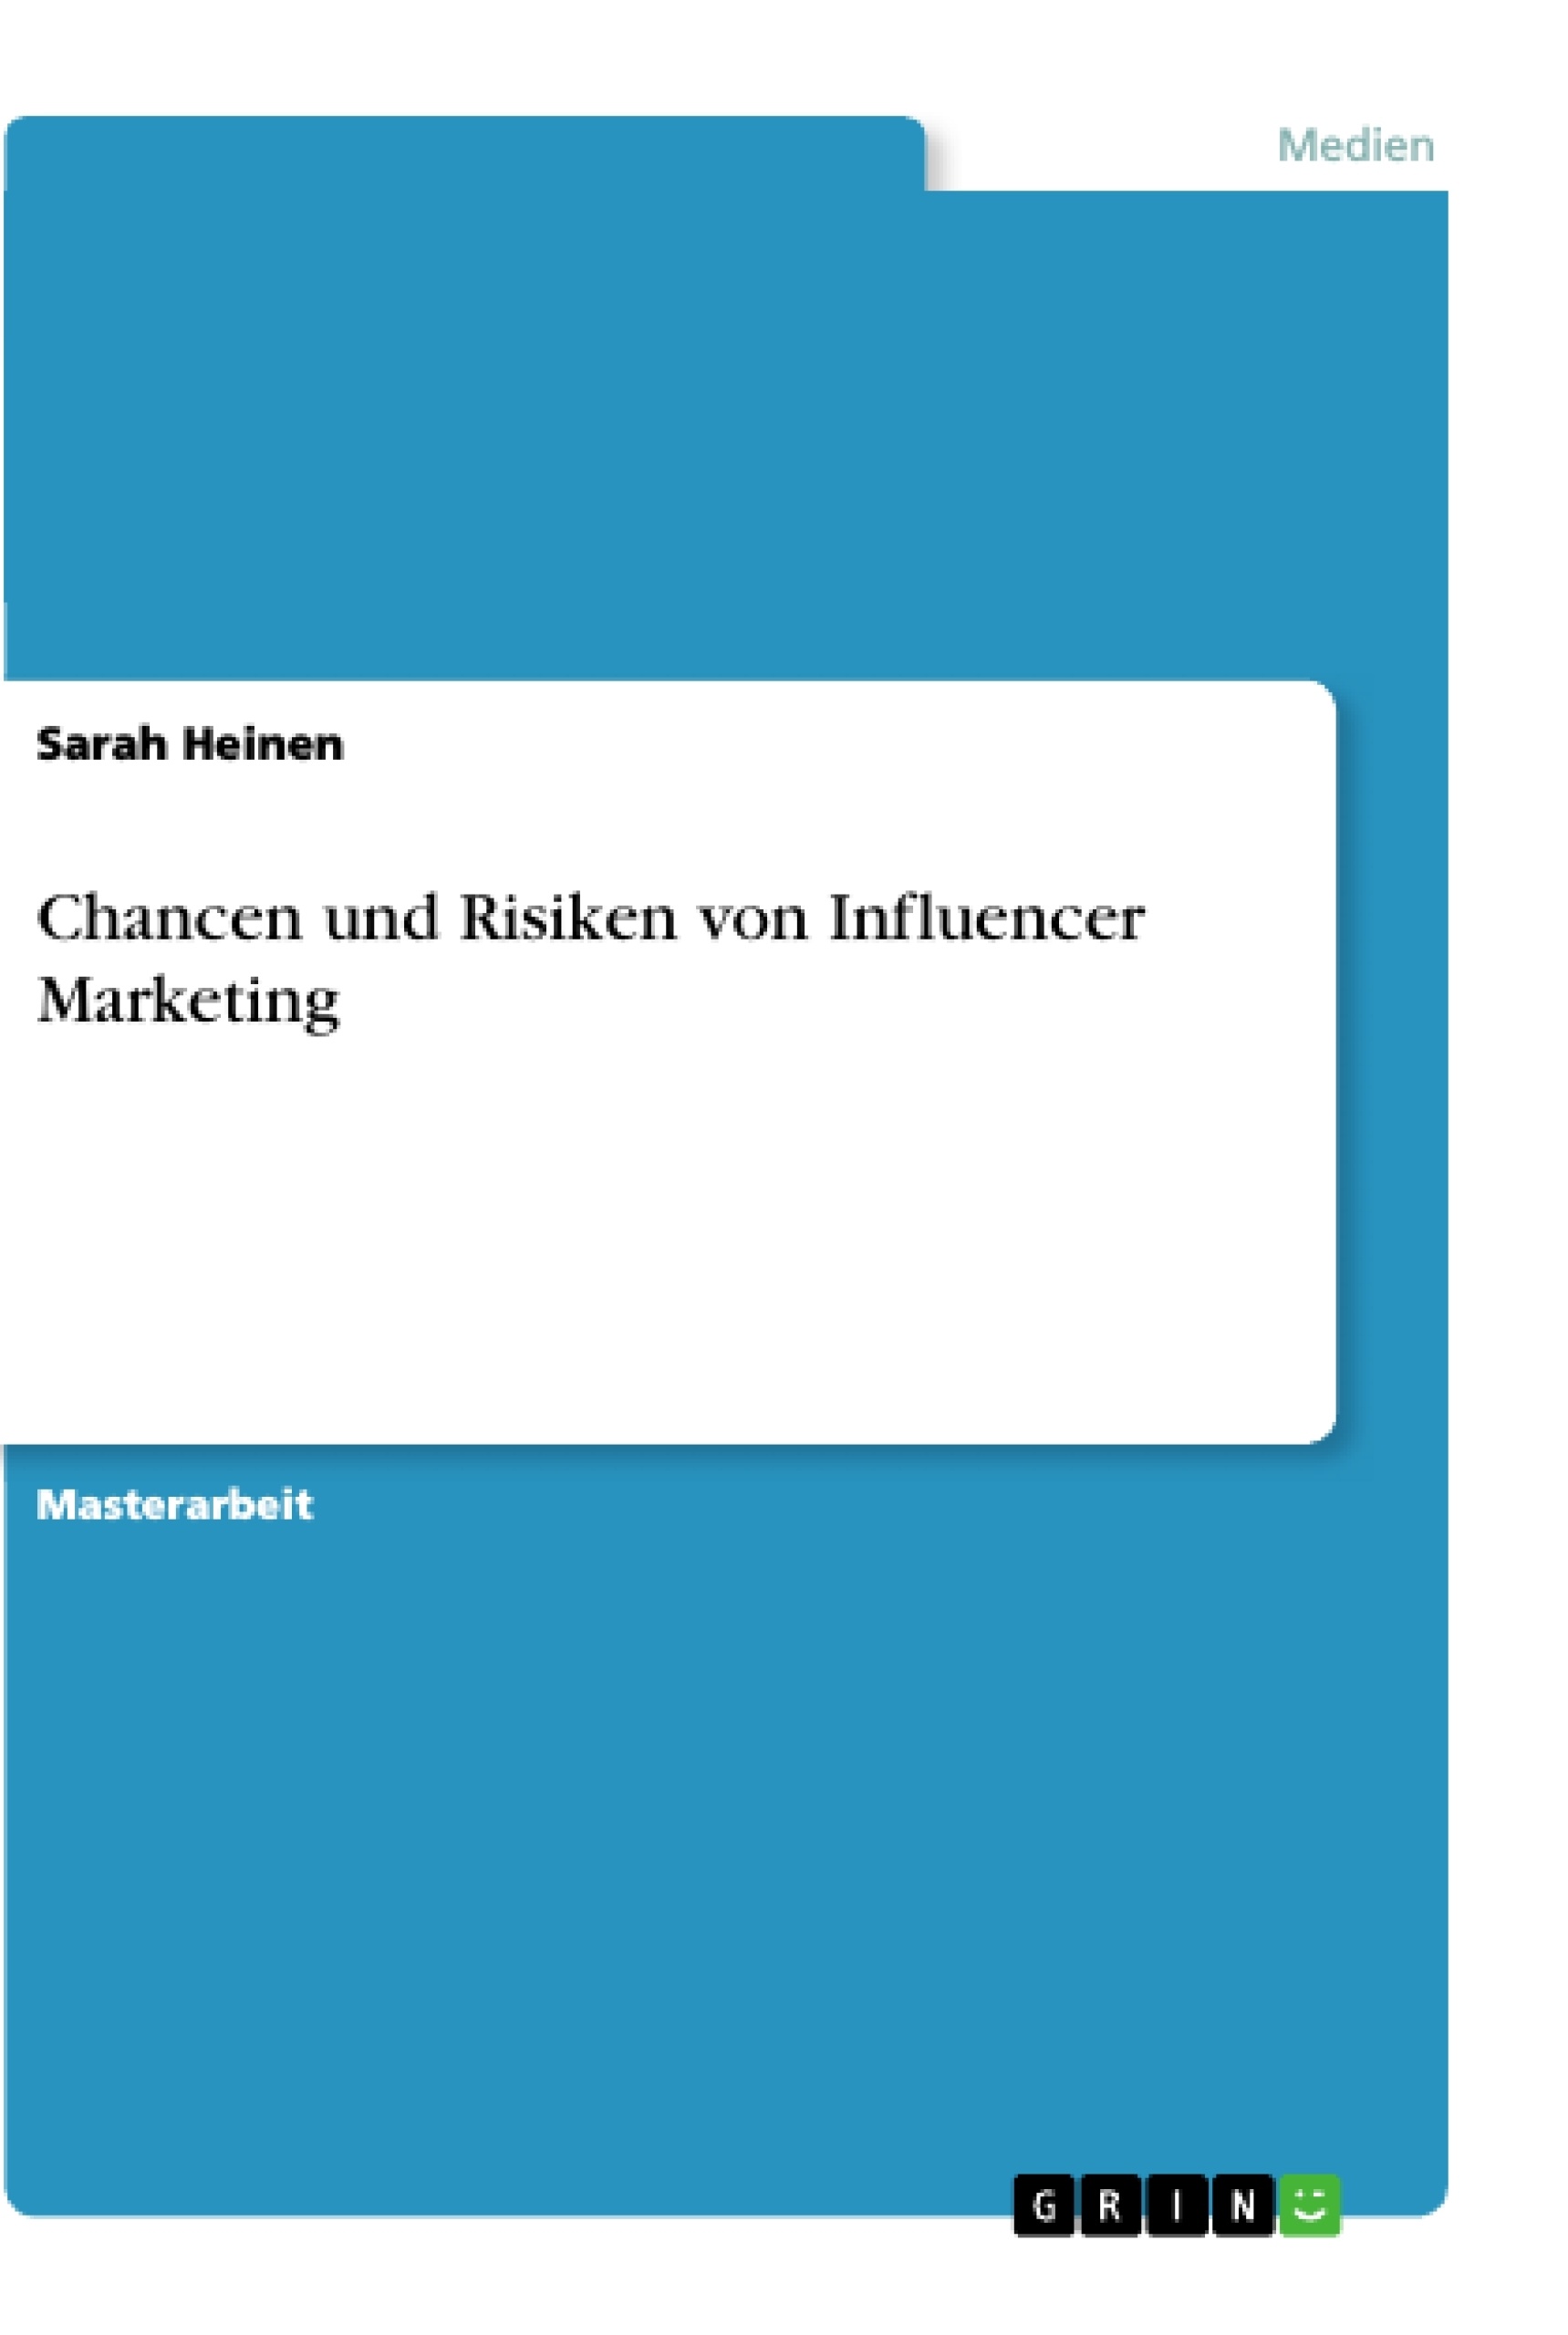 Title: Chancen und Risiken von Influencer Marketing